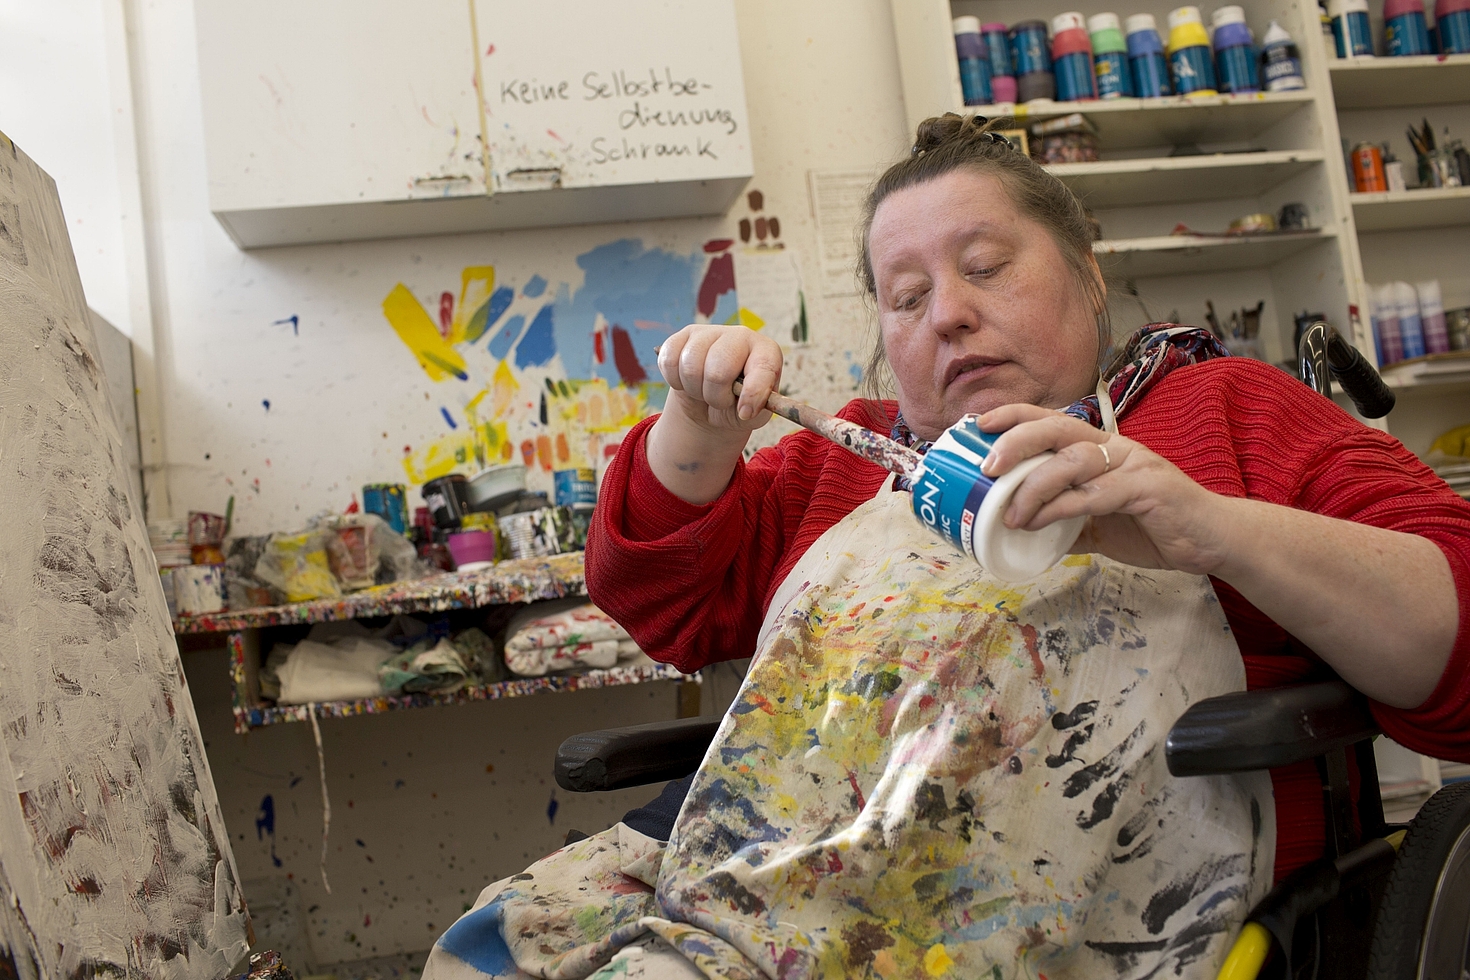 Foto: Frau im Rollstuhl malt mit bunten Farben